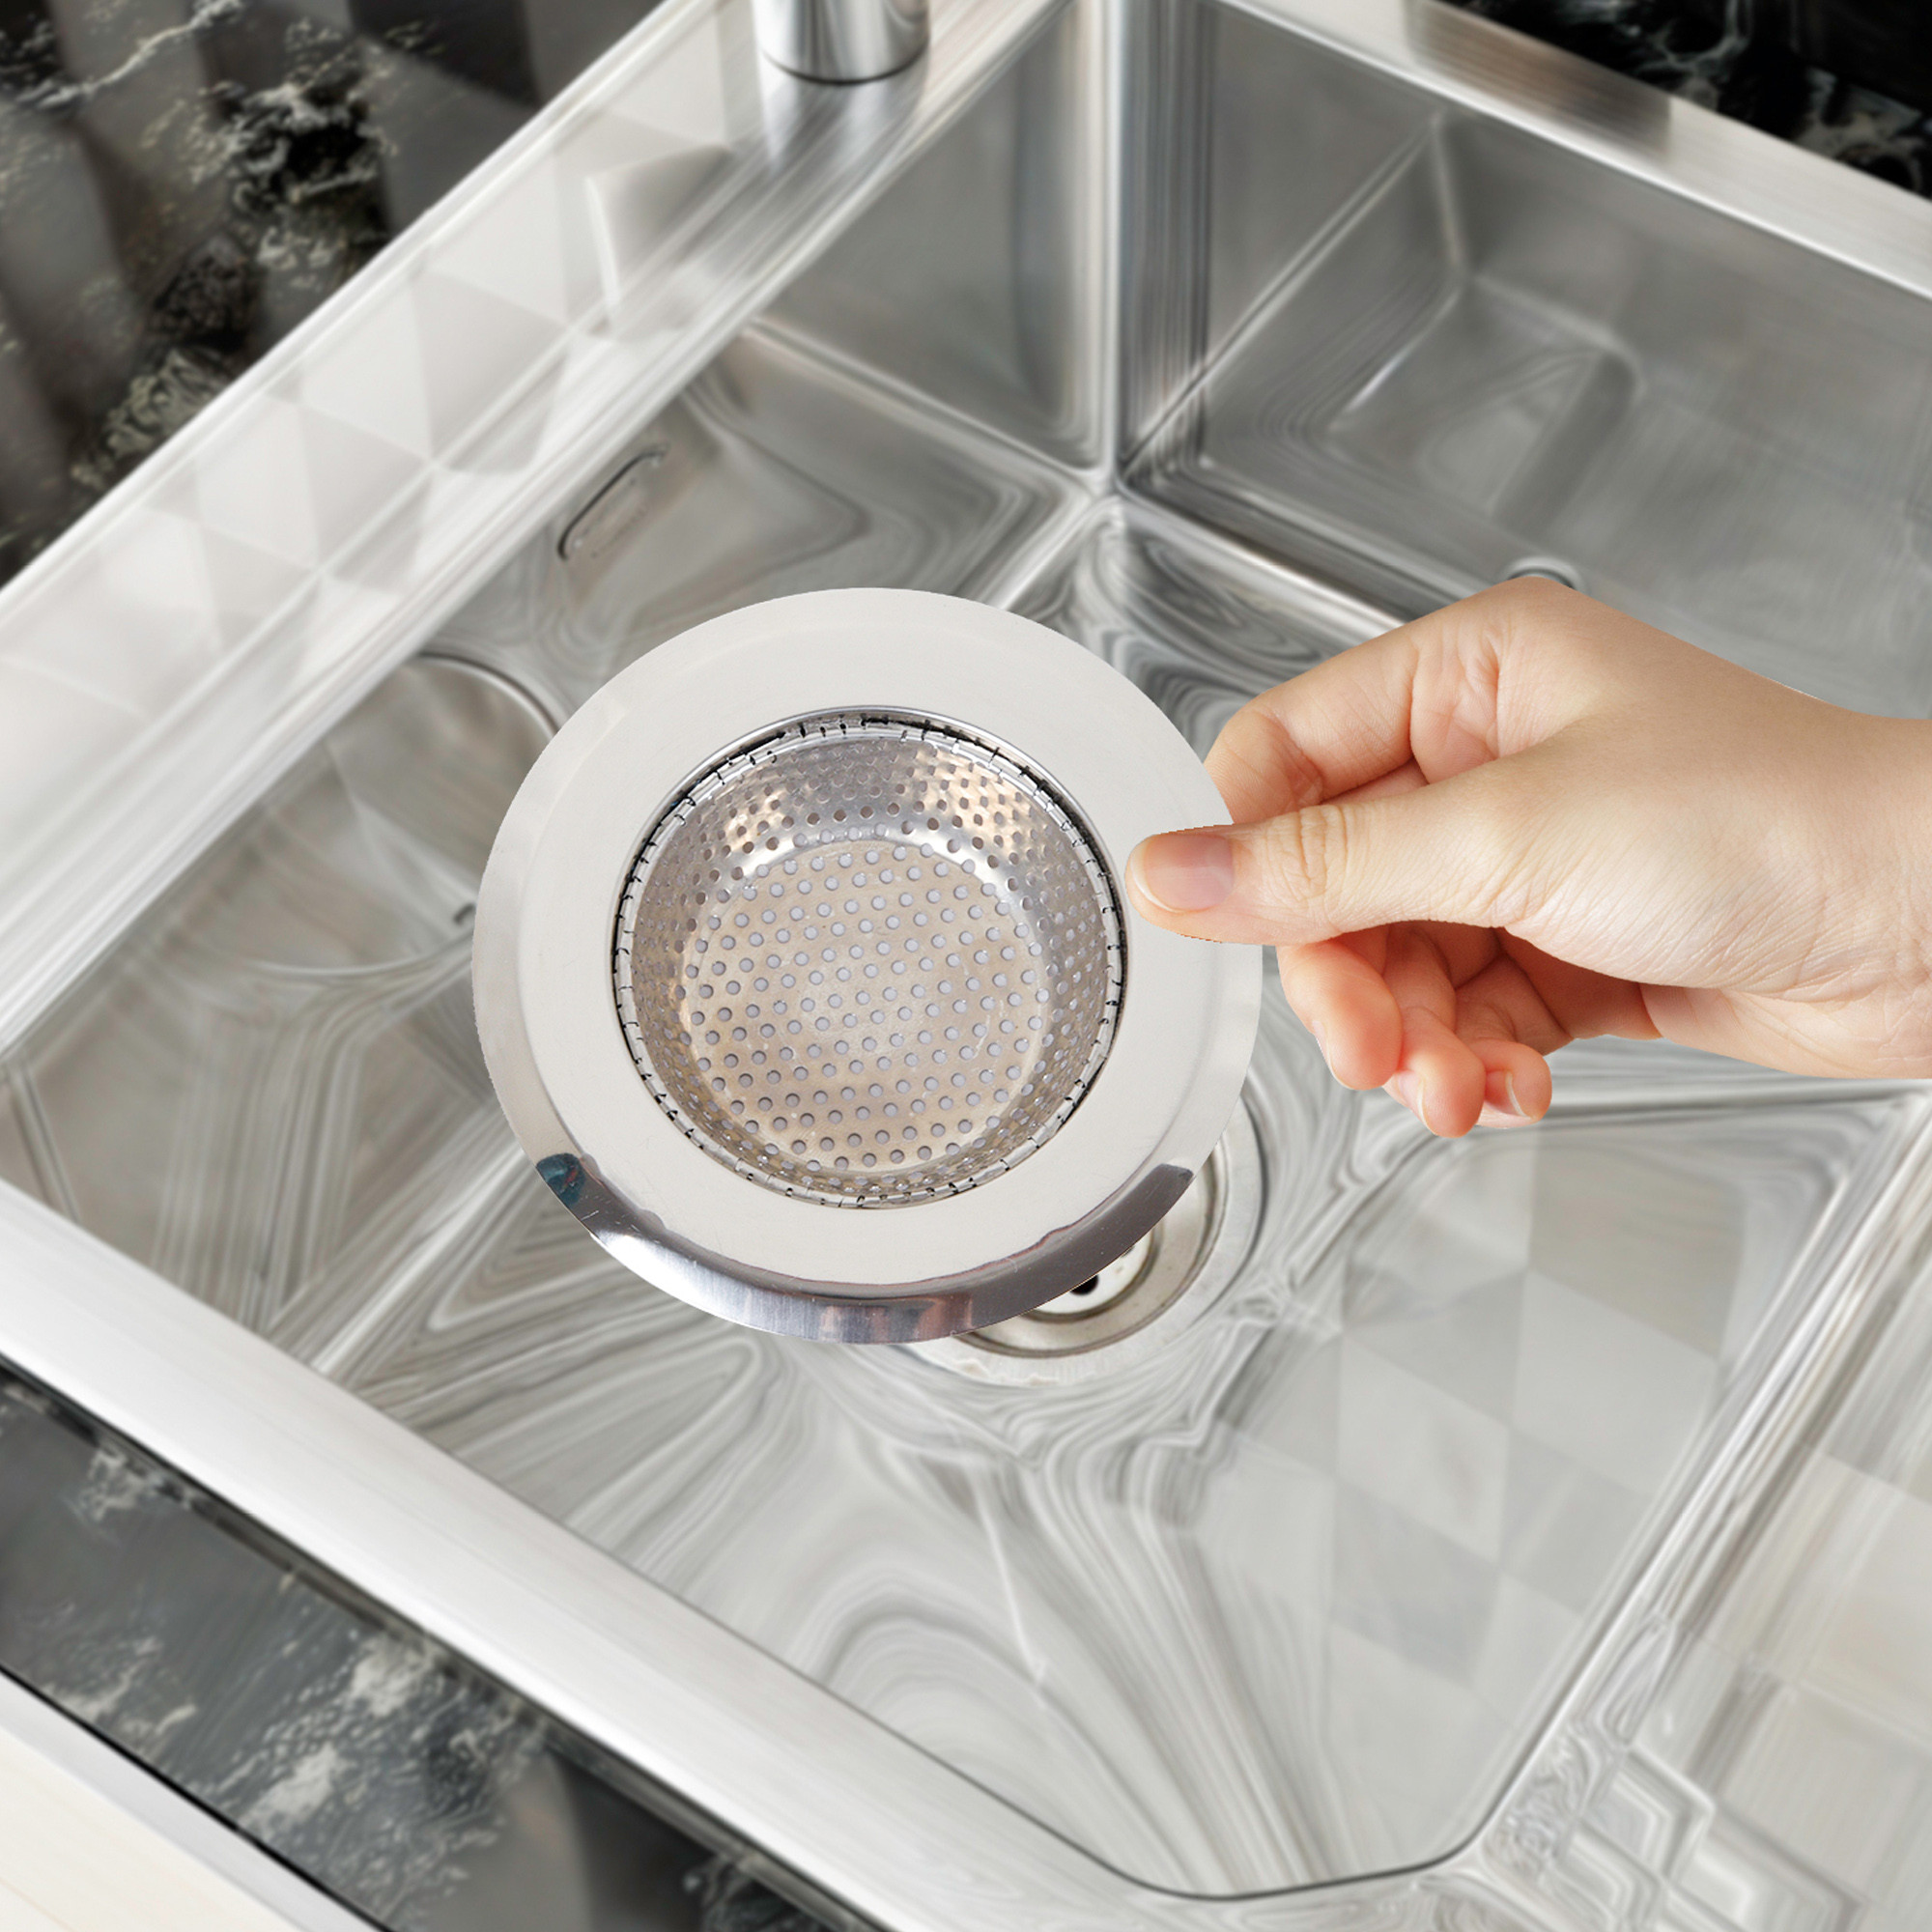 Kuber Industries Sink Strainer | Kitchen Sink Strainer | Sink Drain Strainer | Drain Catcher for Bathroom | Mesh Drain Deep Filter for Kitchen | Sink Round Moti Jali | 115 mm | Silver